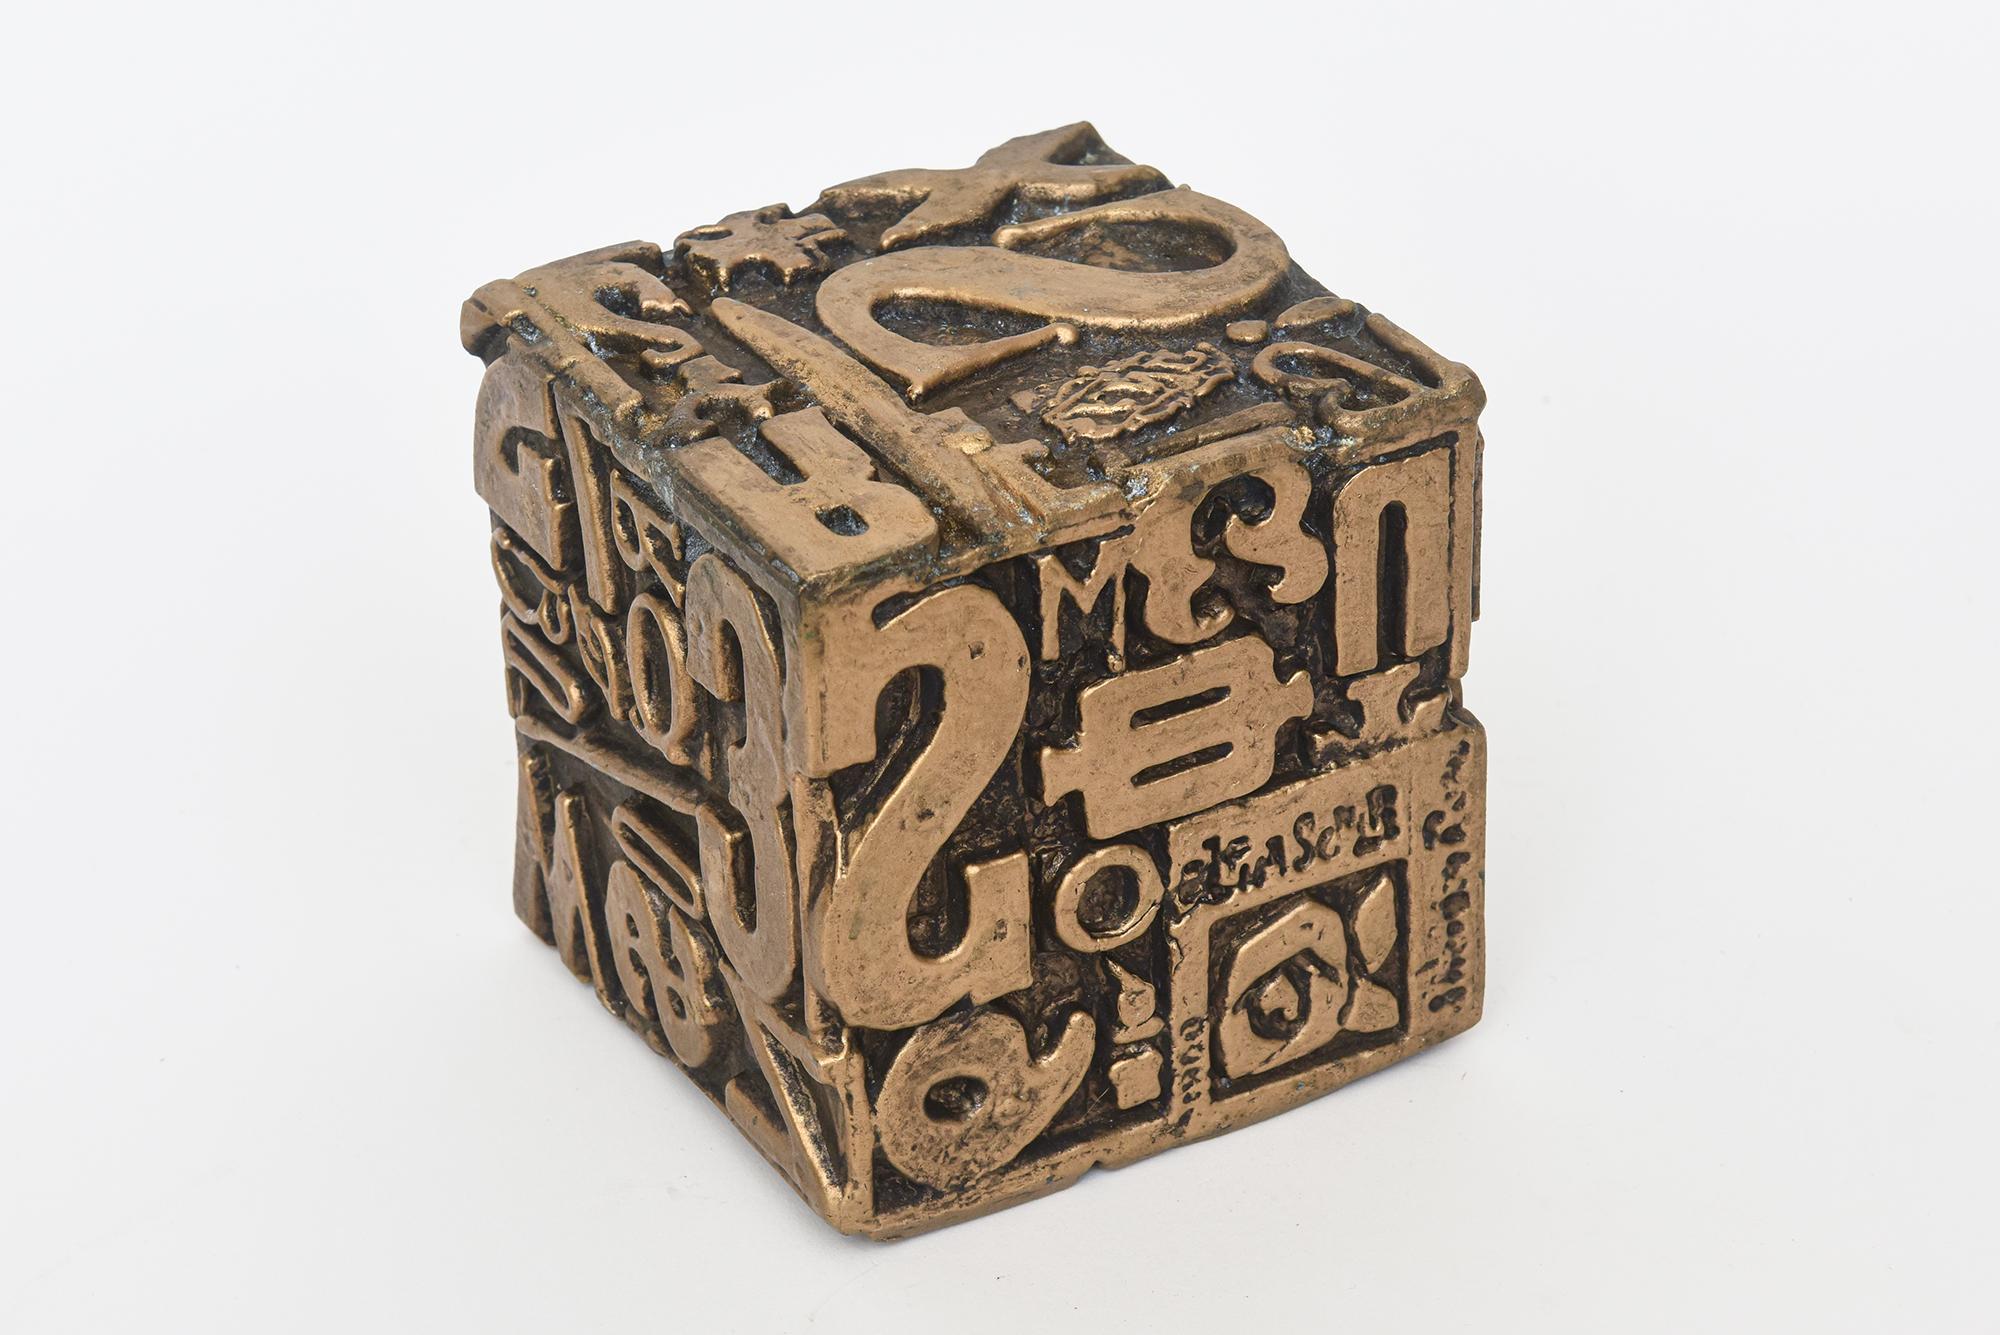 Cette intéressante sculpture abstraite alpha cube de Sheldon Rose est une œuvre mixte composée de métal polychrome et de peinture. Il présente un ensemble de symboles, de chiffres et de lettres en fausse typographie. Chaque face est différente et